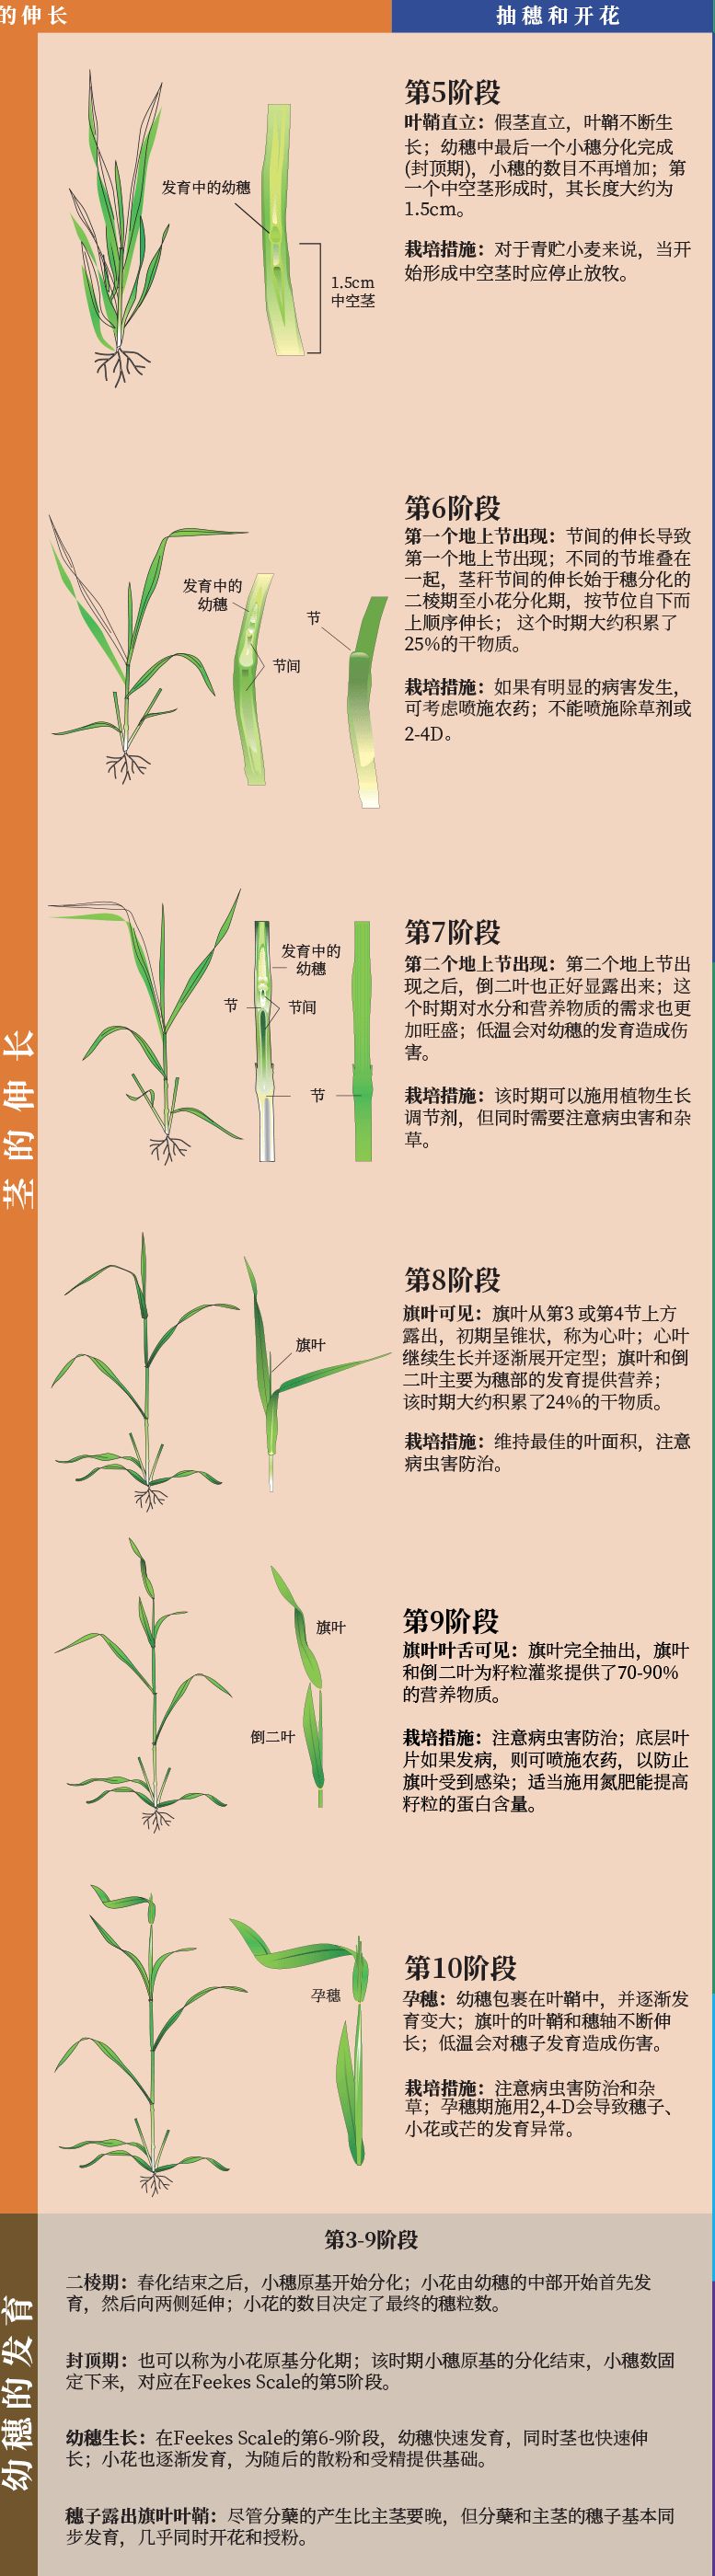 小麦生长发育图